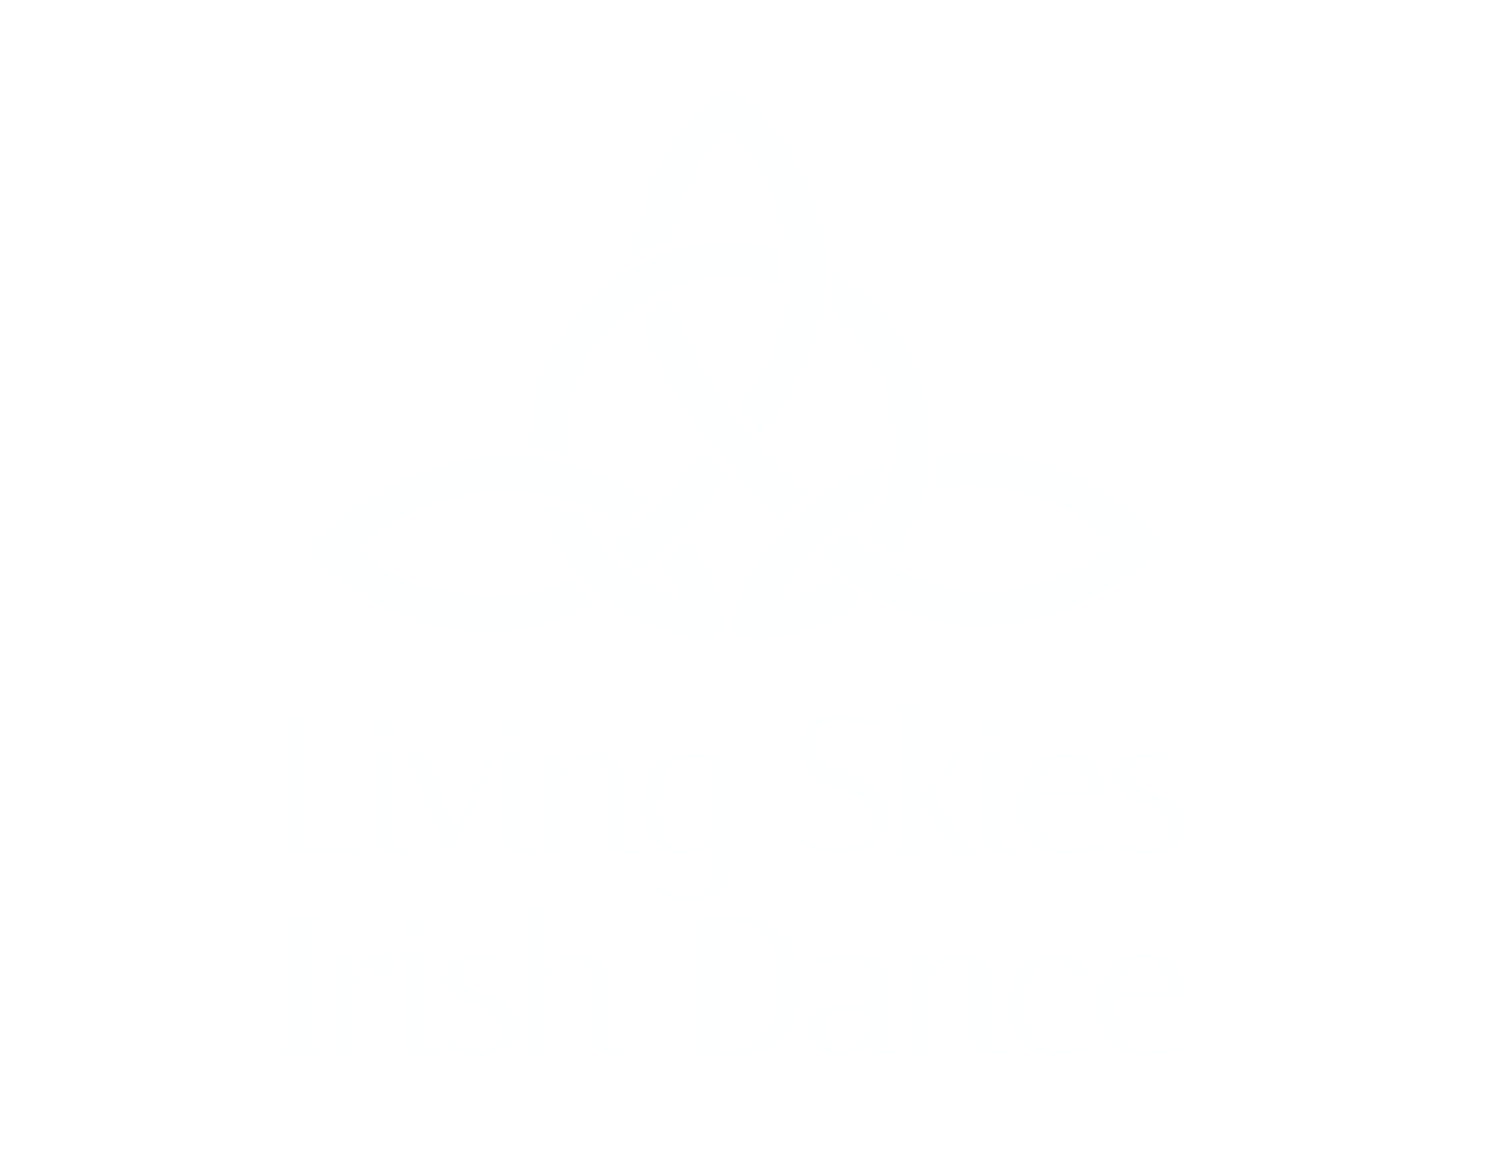 Living Skies Irish Dance